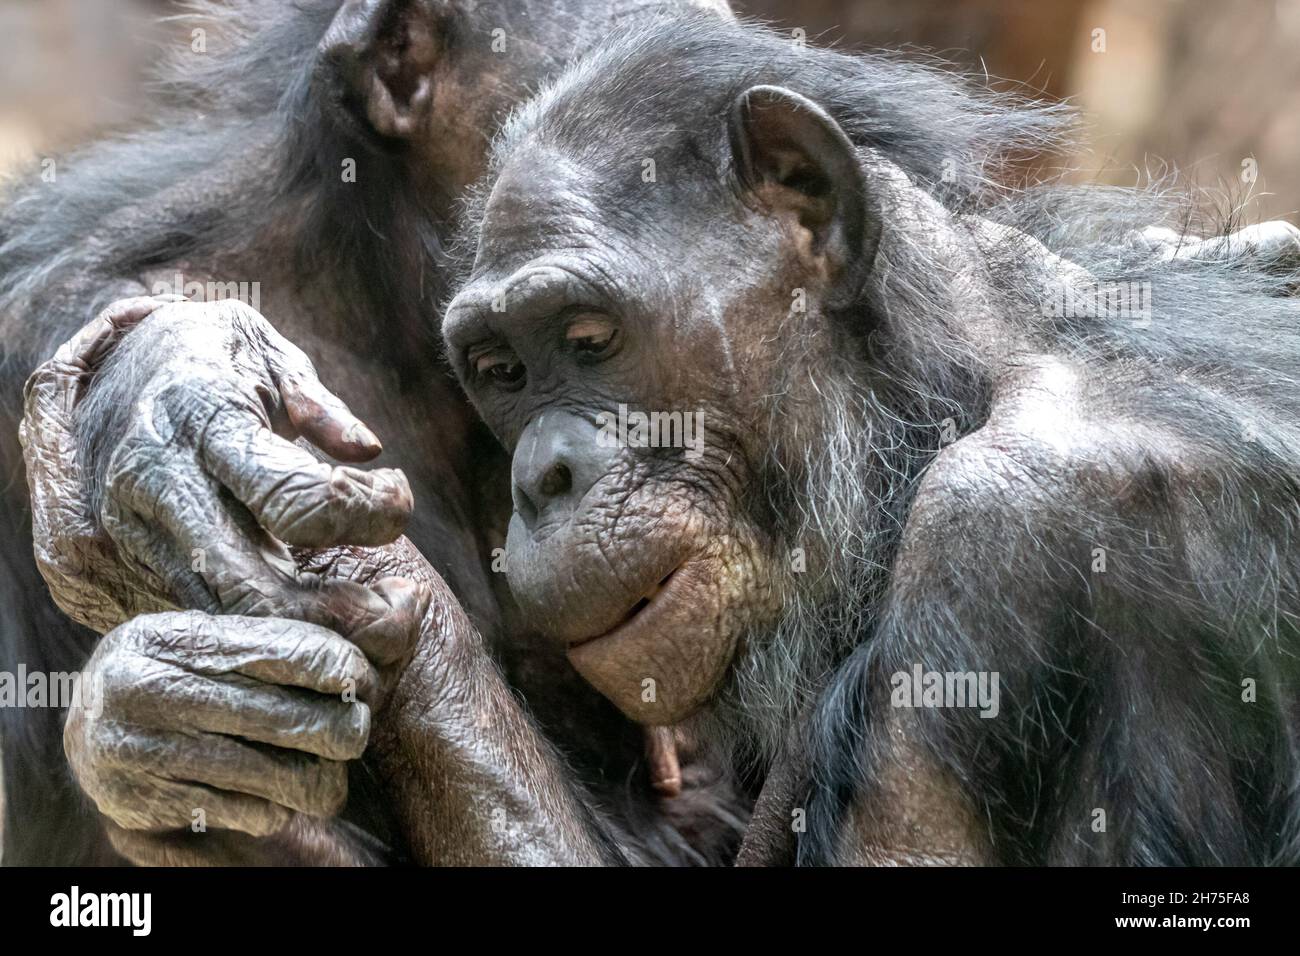 deux singes bonobo qui s'embrasent Banque D'Images